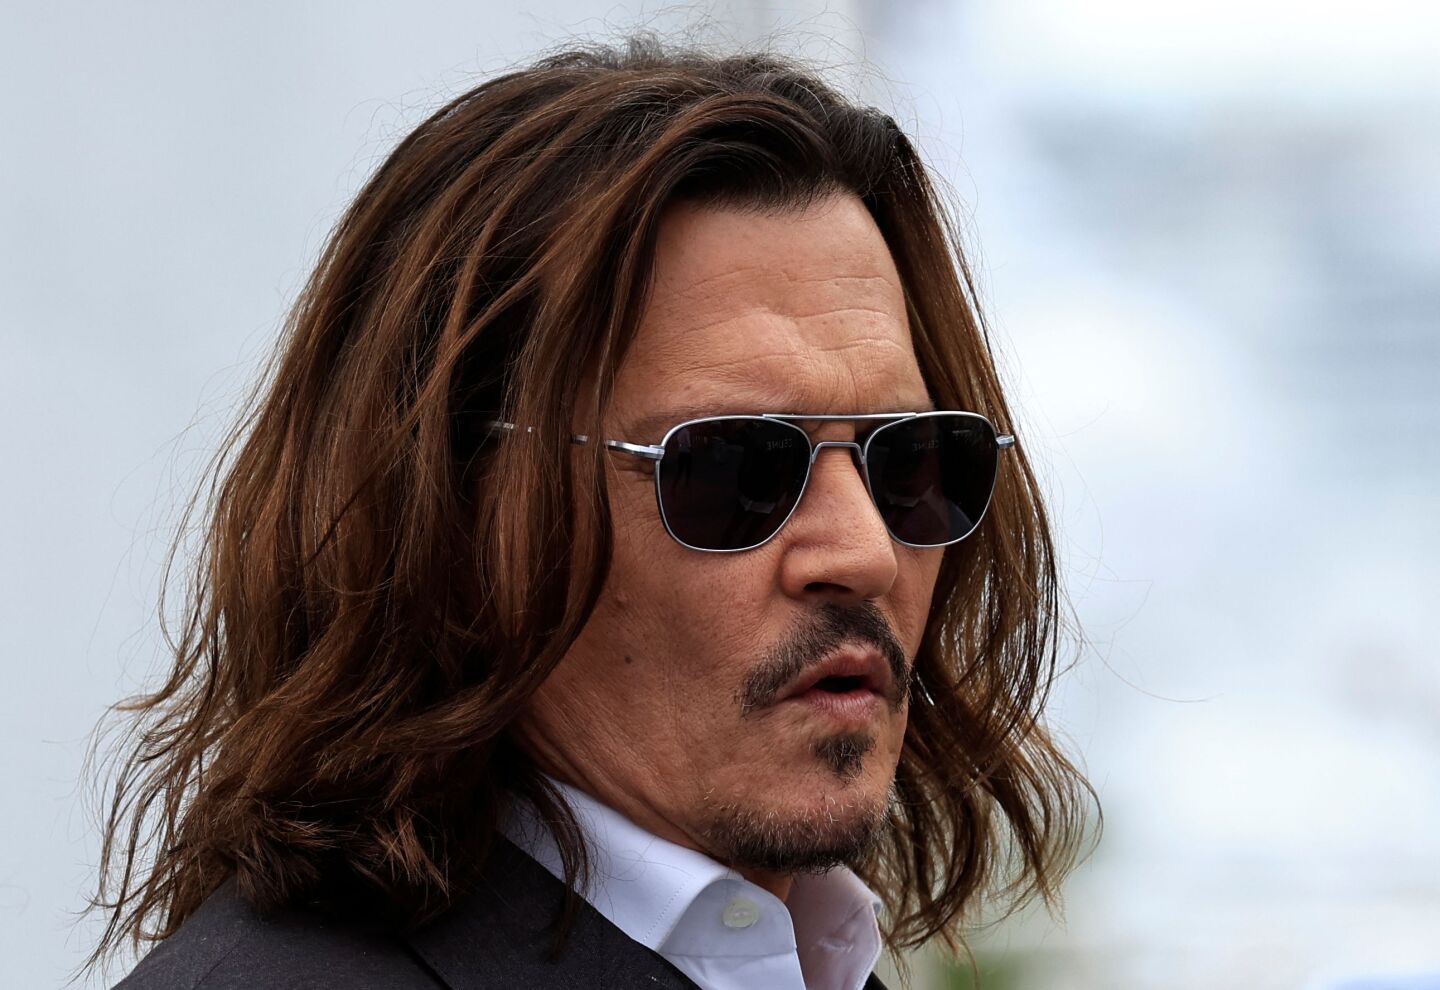 Johnny Depp responde a los intentos de boicot: “No pienso en Hollywood”